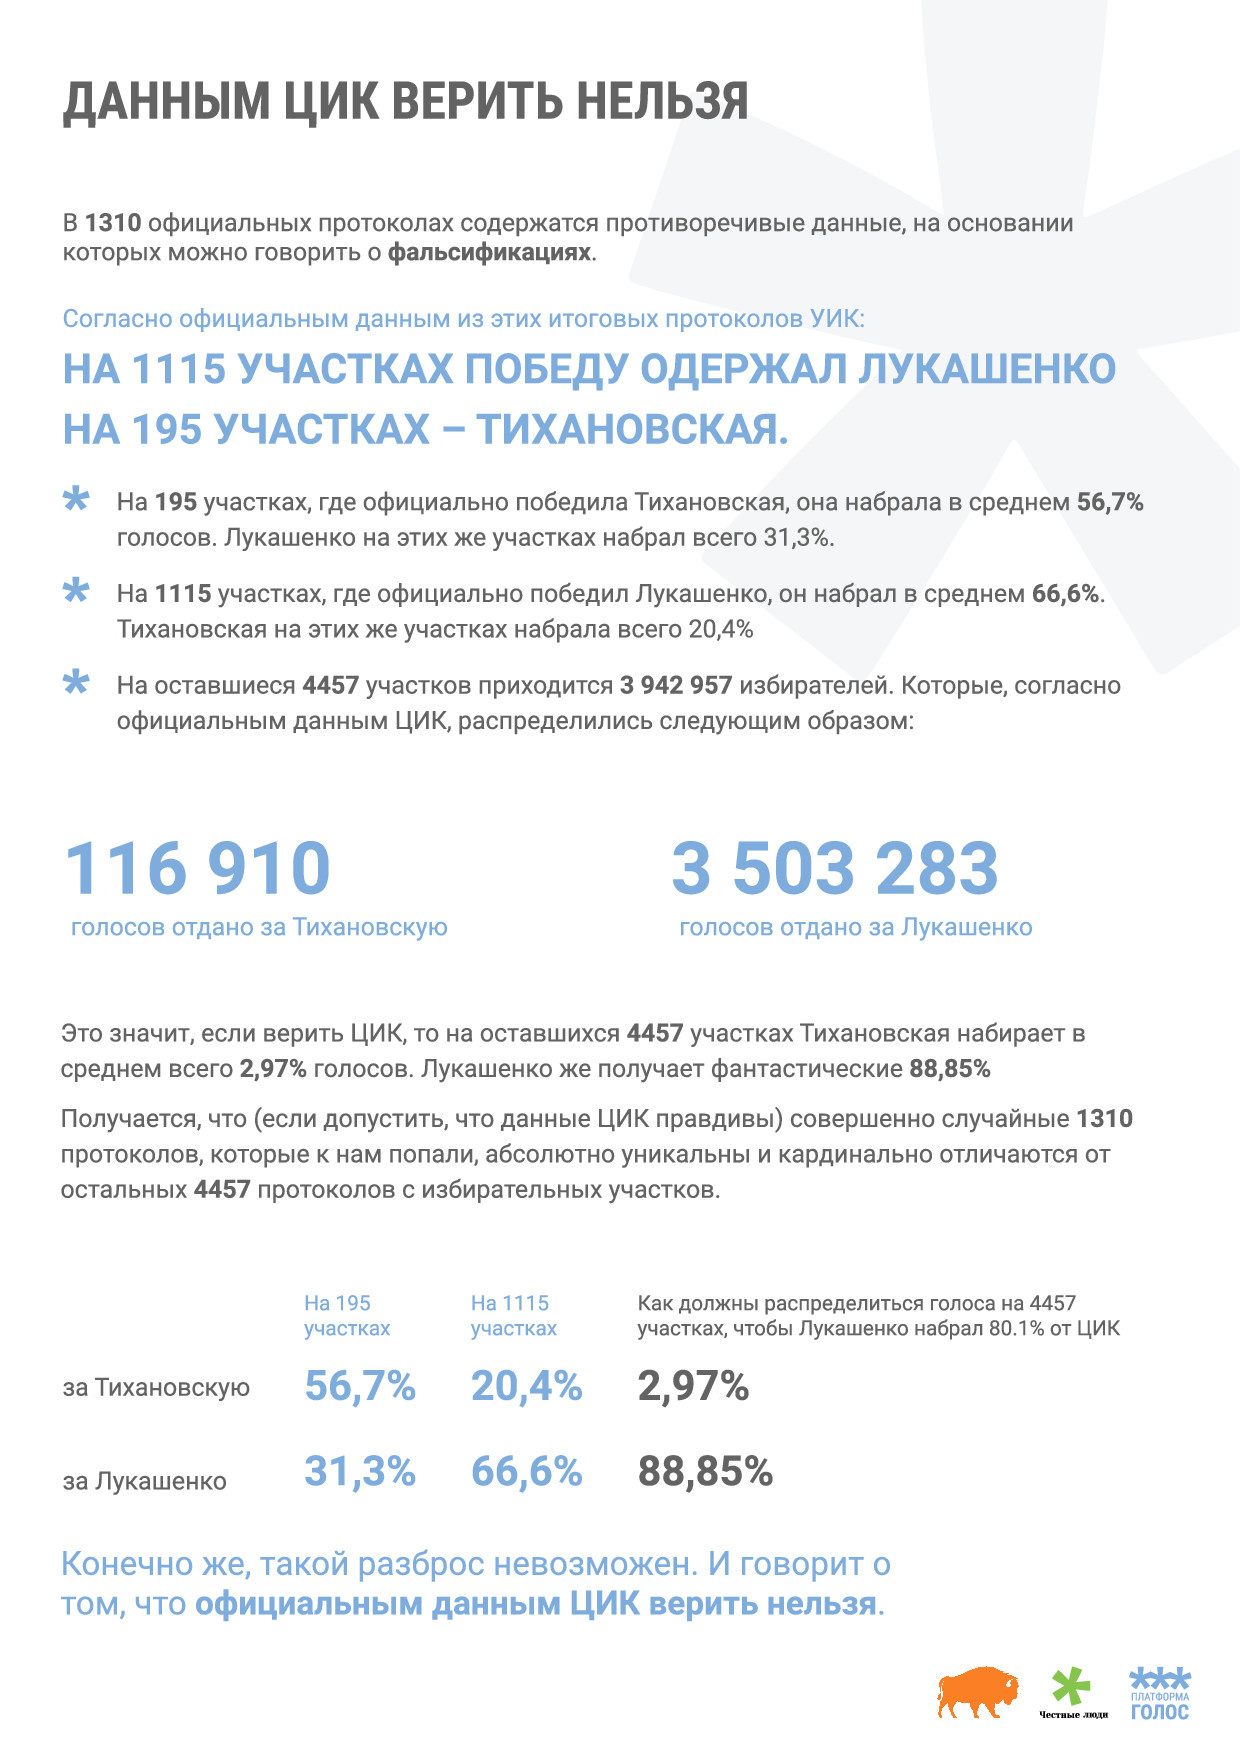 фрагмент итогового отчета о выборах президента республики Беларусь по данным платформ «Голос», «Зубр» и сообщества «Честные люди»